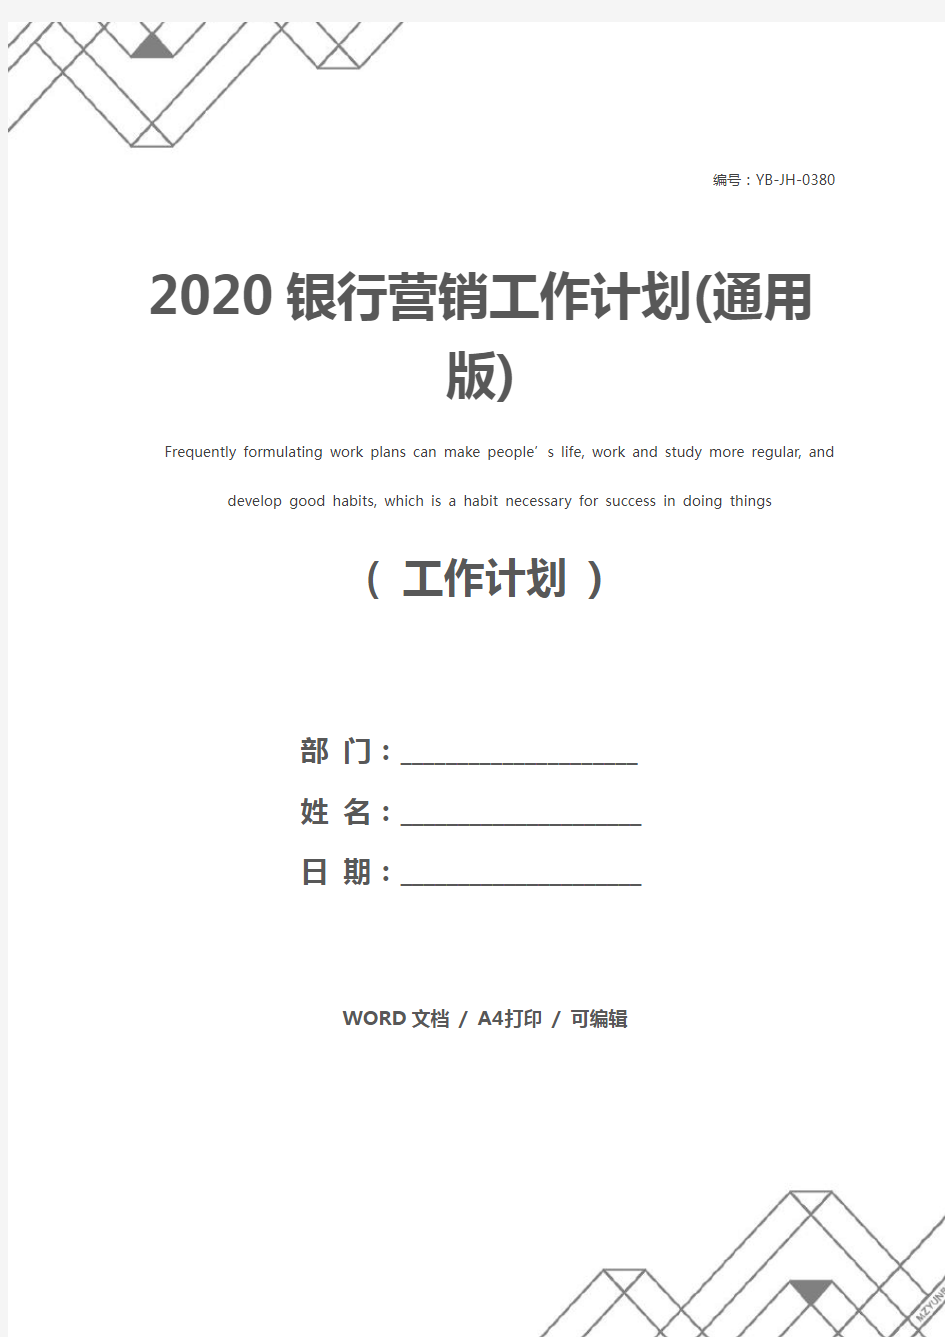 2020银行营销工作计划(通用版)